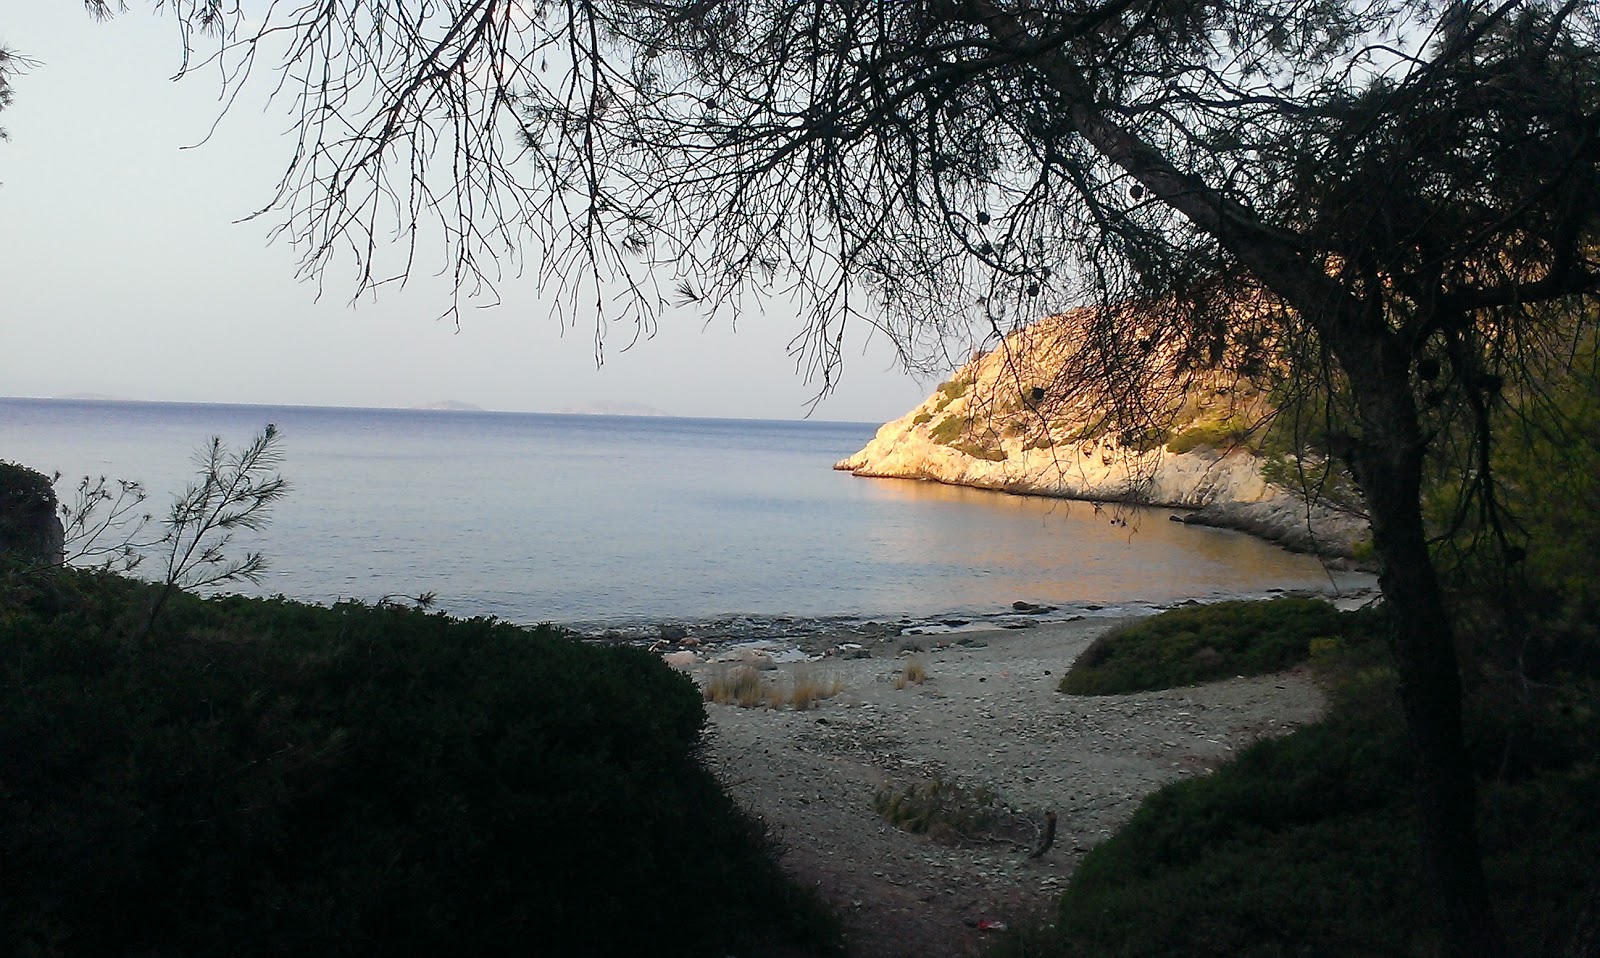 Kanakia III'in fotoğrafı parlak kum ve kayalar yüzey ile